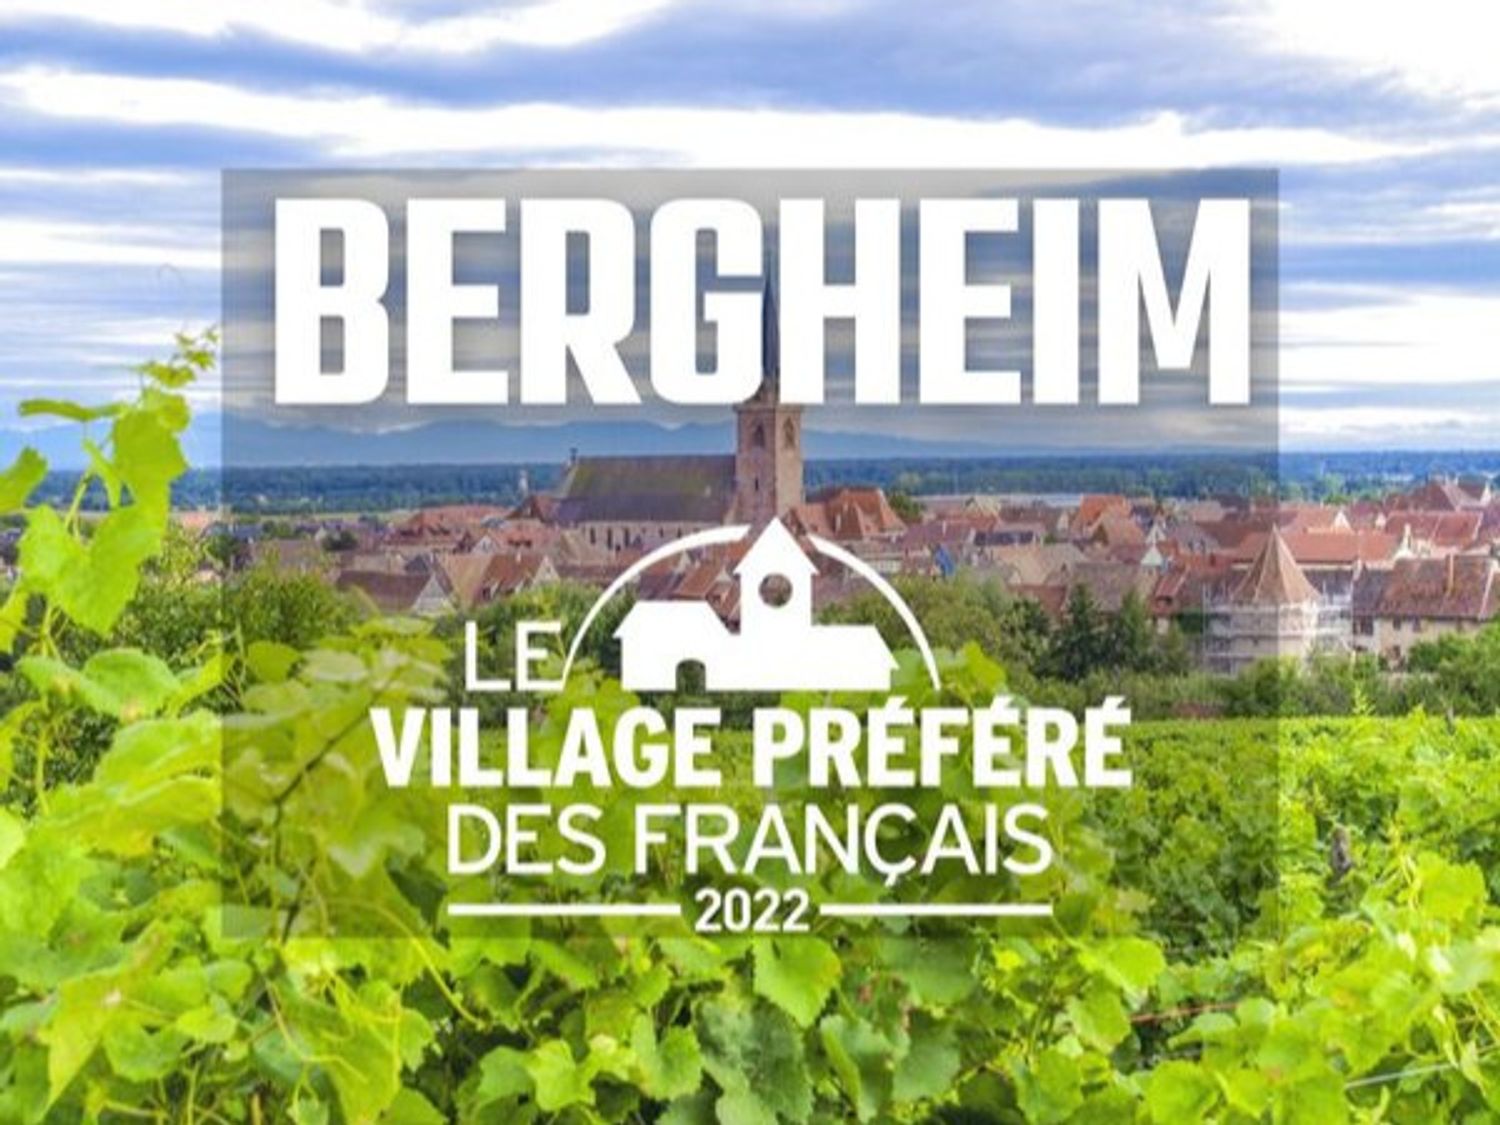 Bergheim, village préféré des Français 2022 